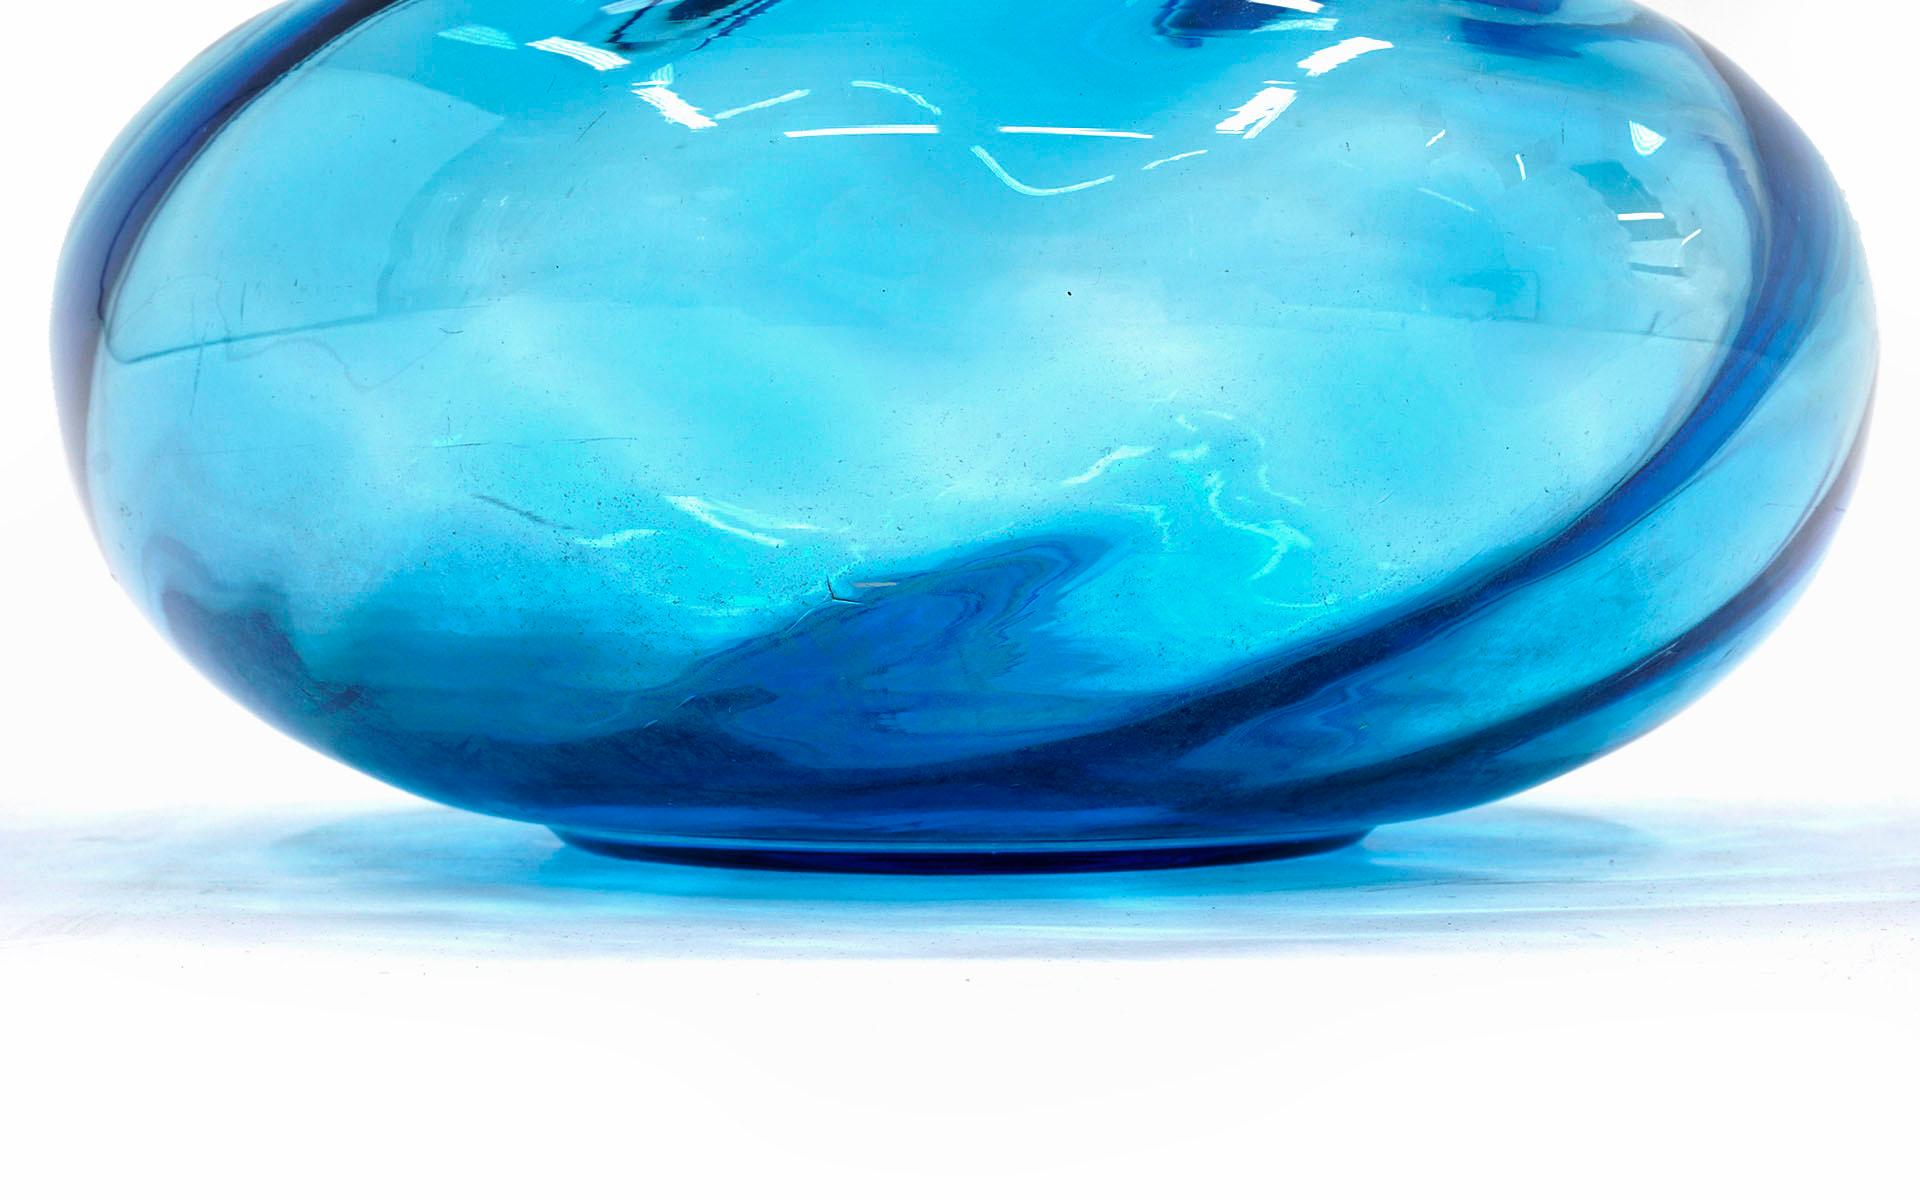 blenko blue vase